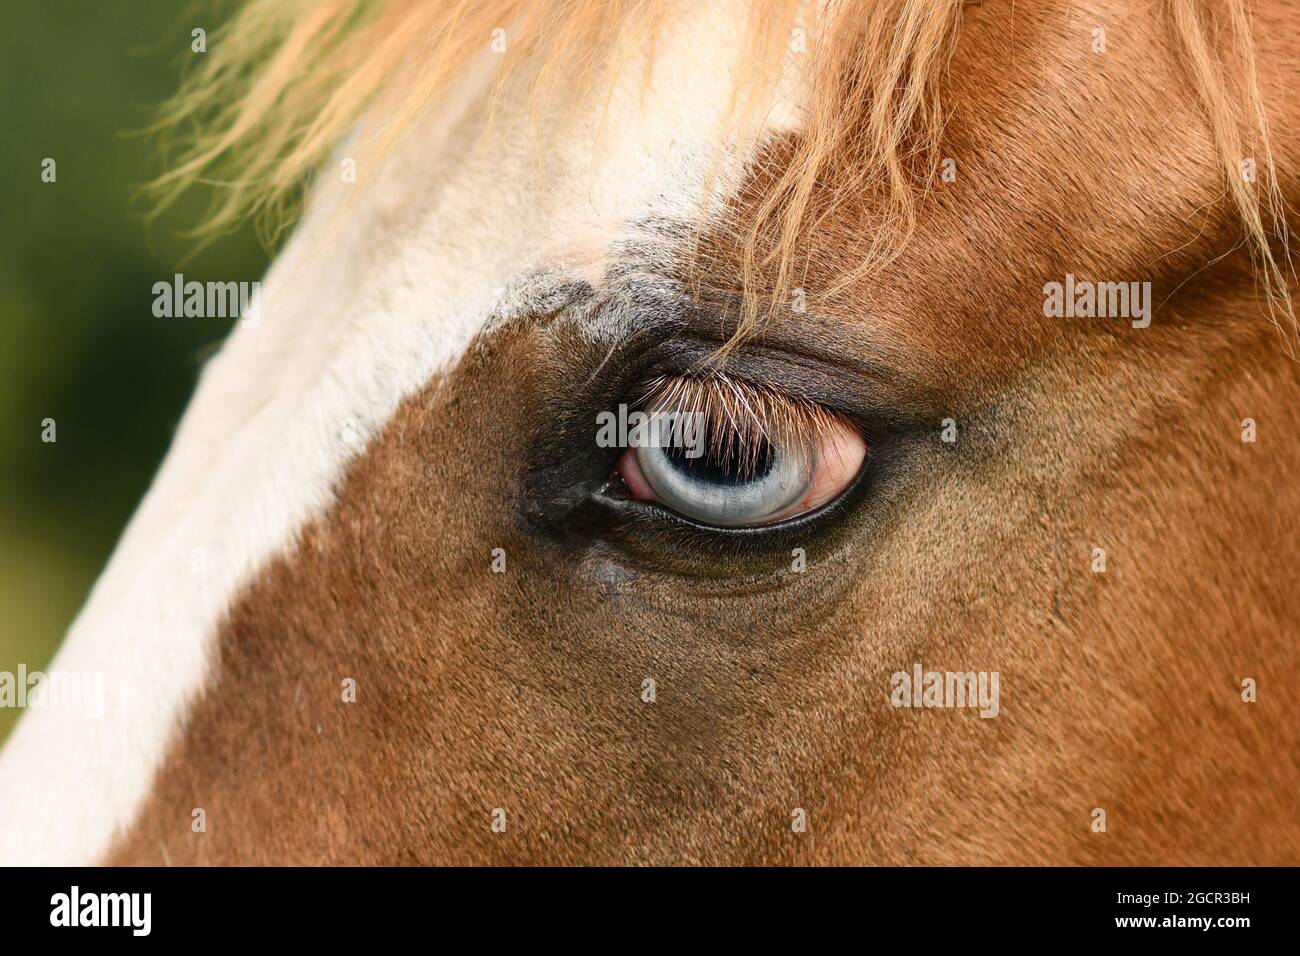 Primer plano del ojo azul claro del caballo pinto con mutación genética que afecta el desarrollo del pigmento en el iris, llamada heterocromía completa Foto de stock